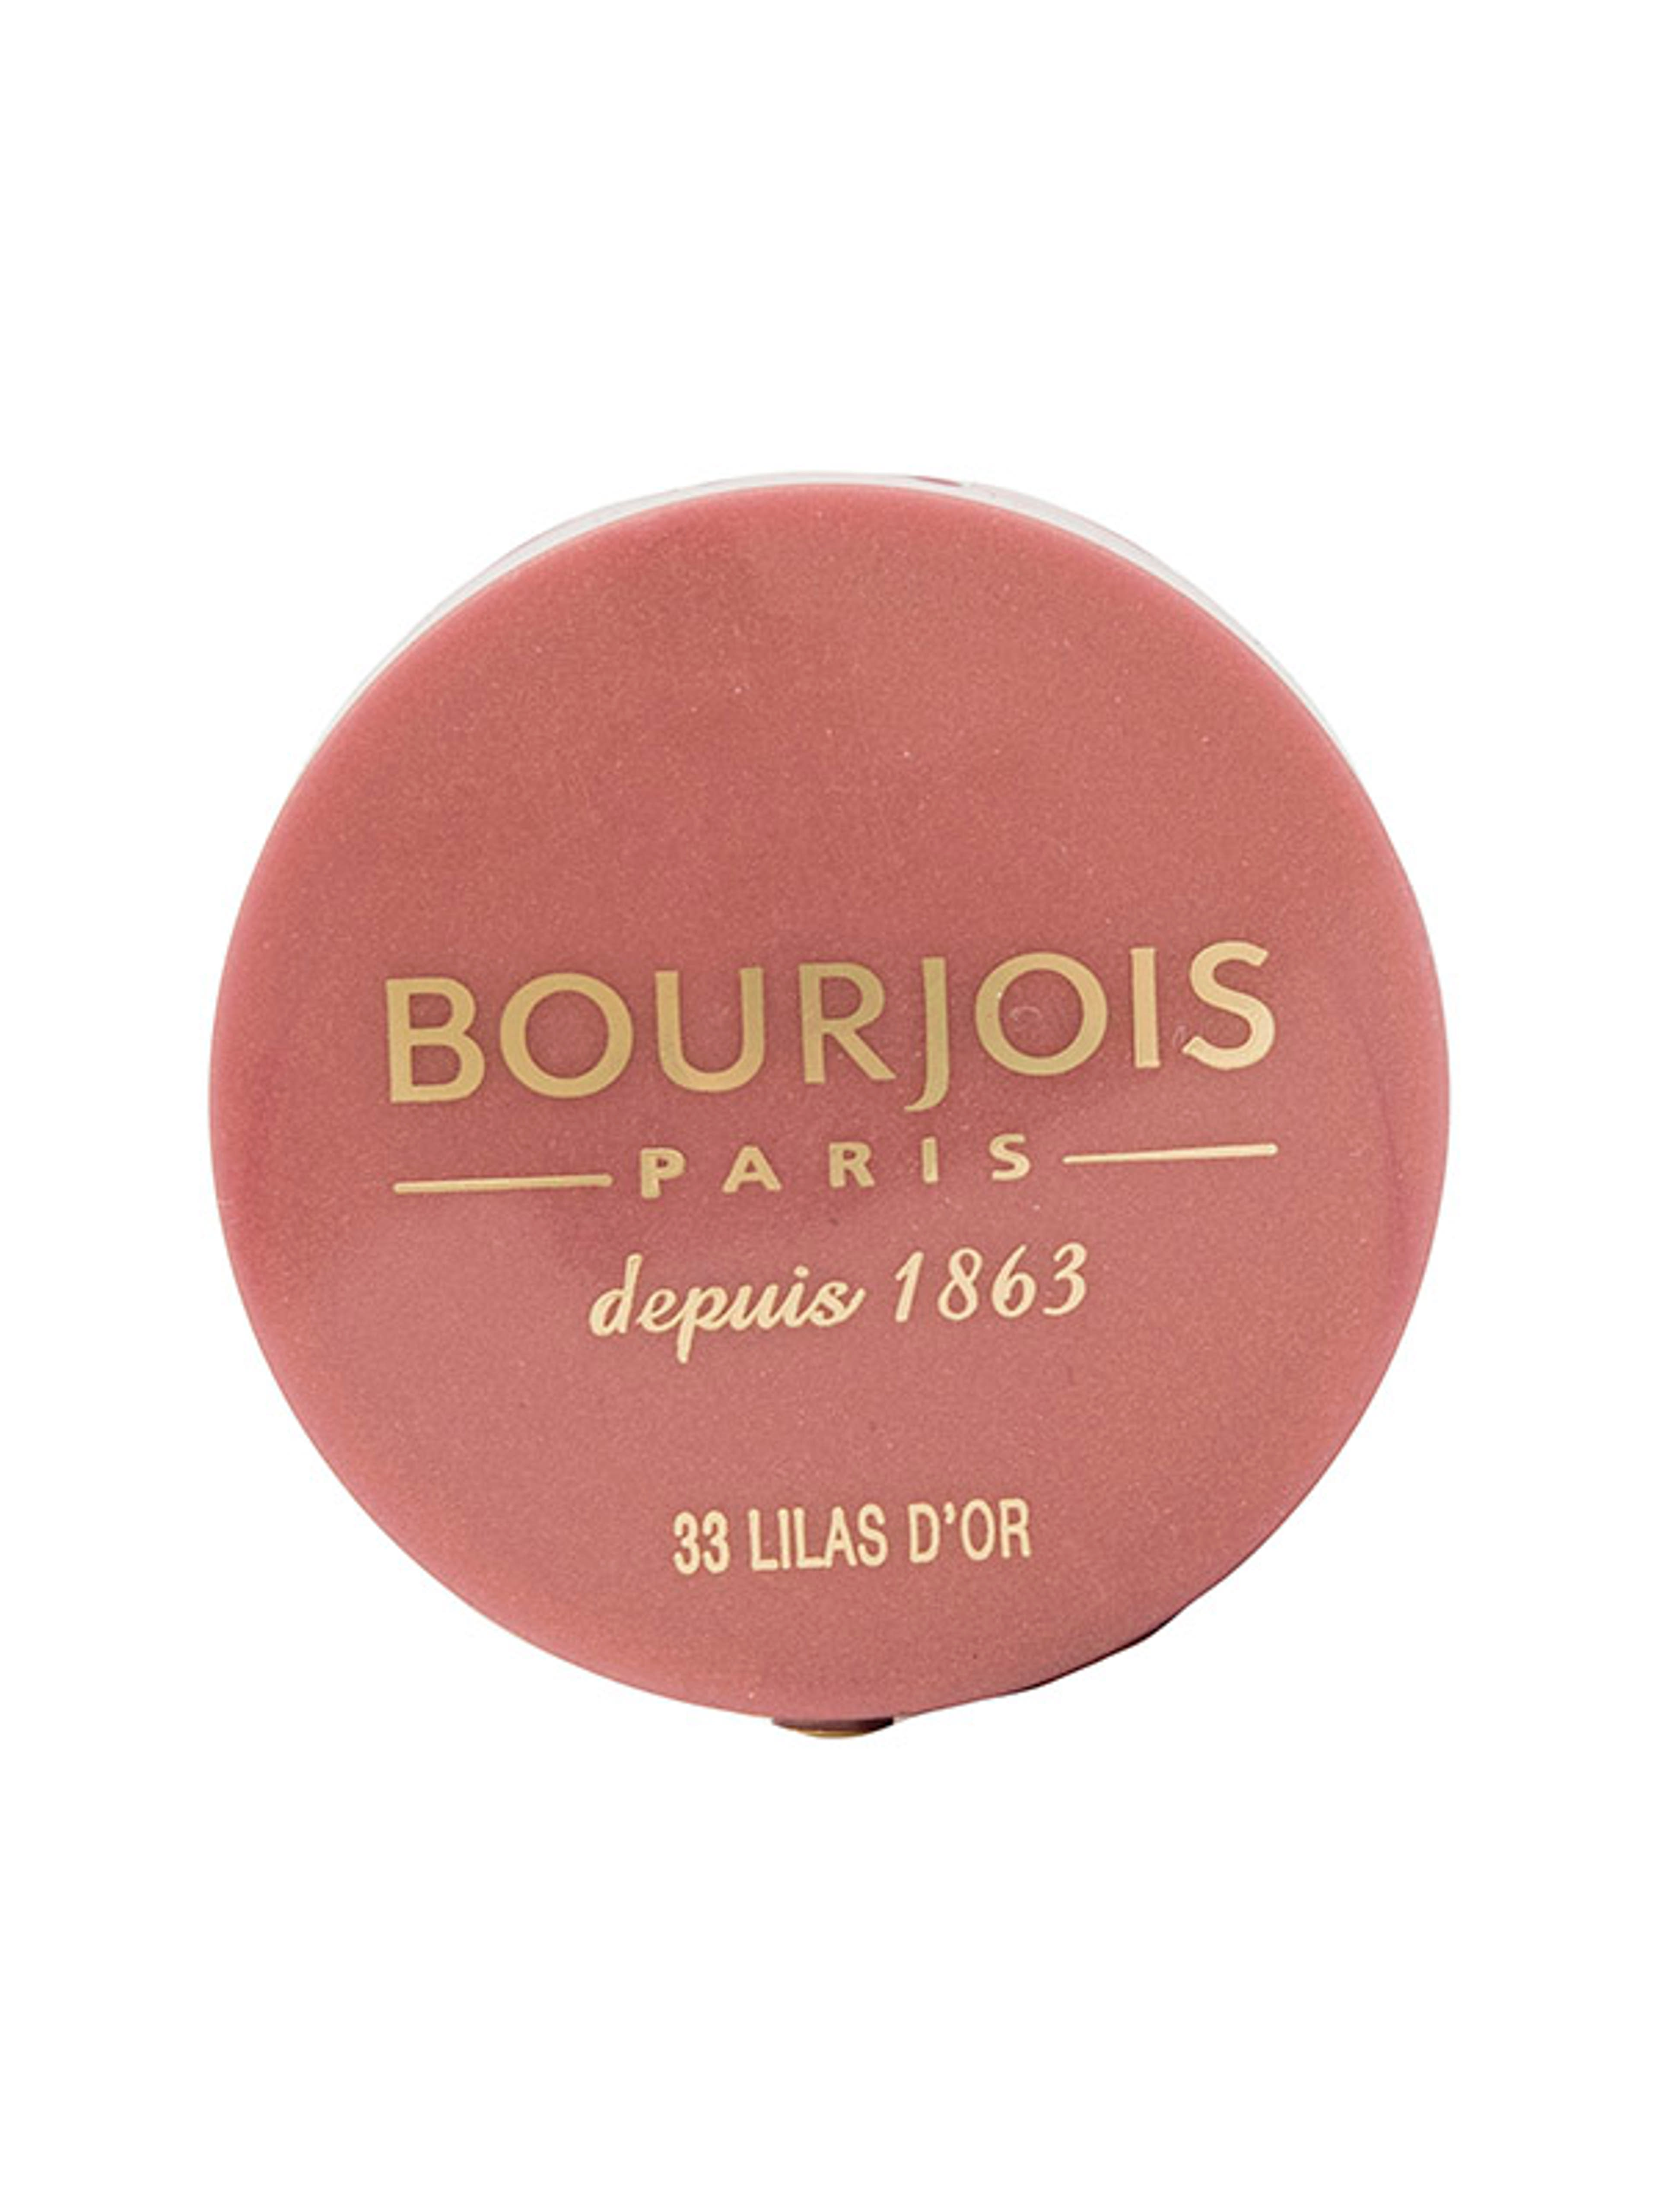 Bourjois pirosító little round pot /33 - 1 db-1